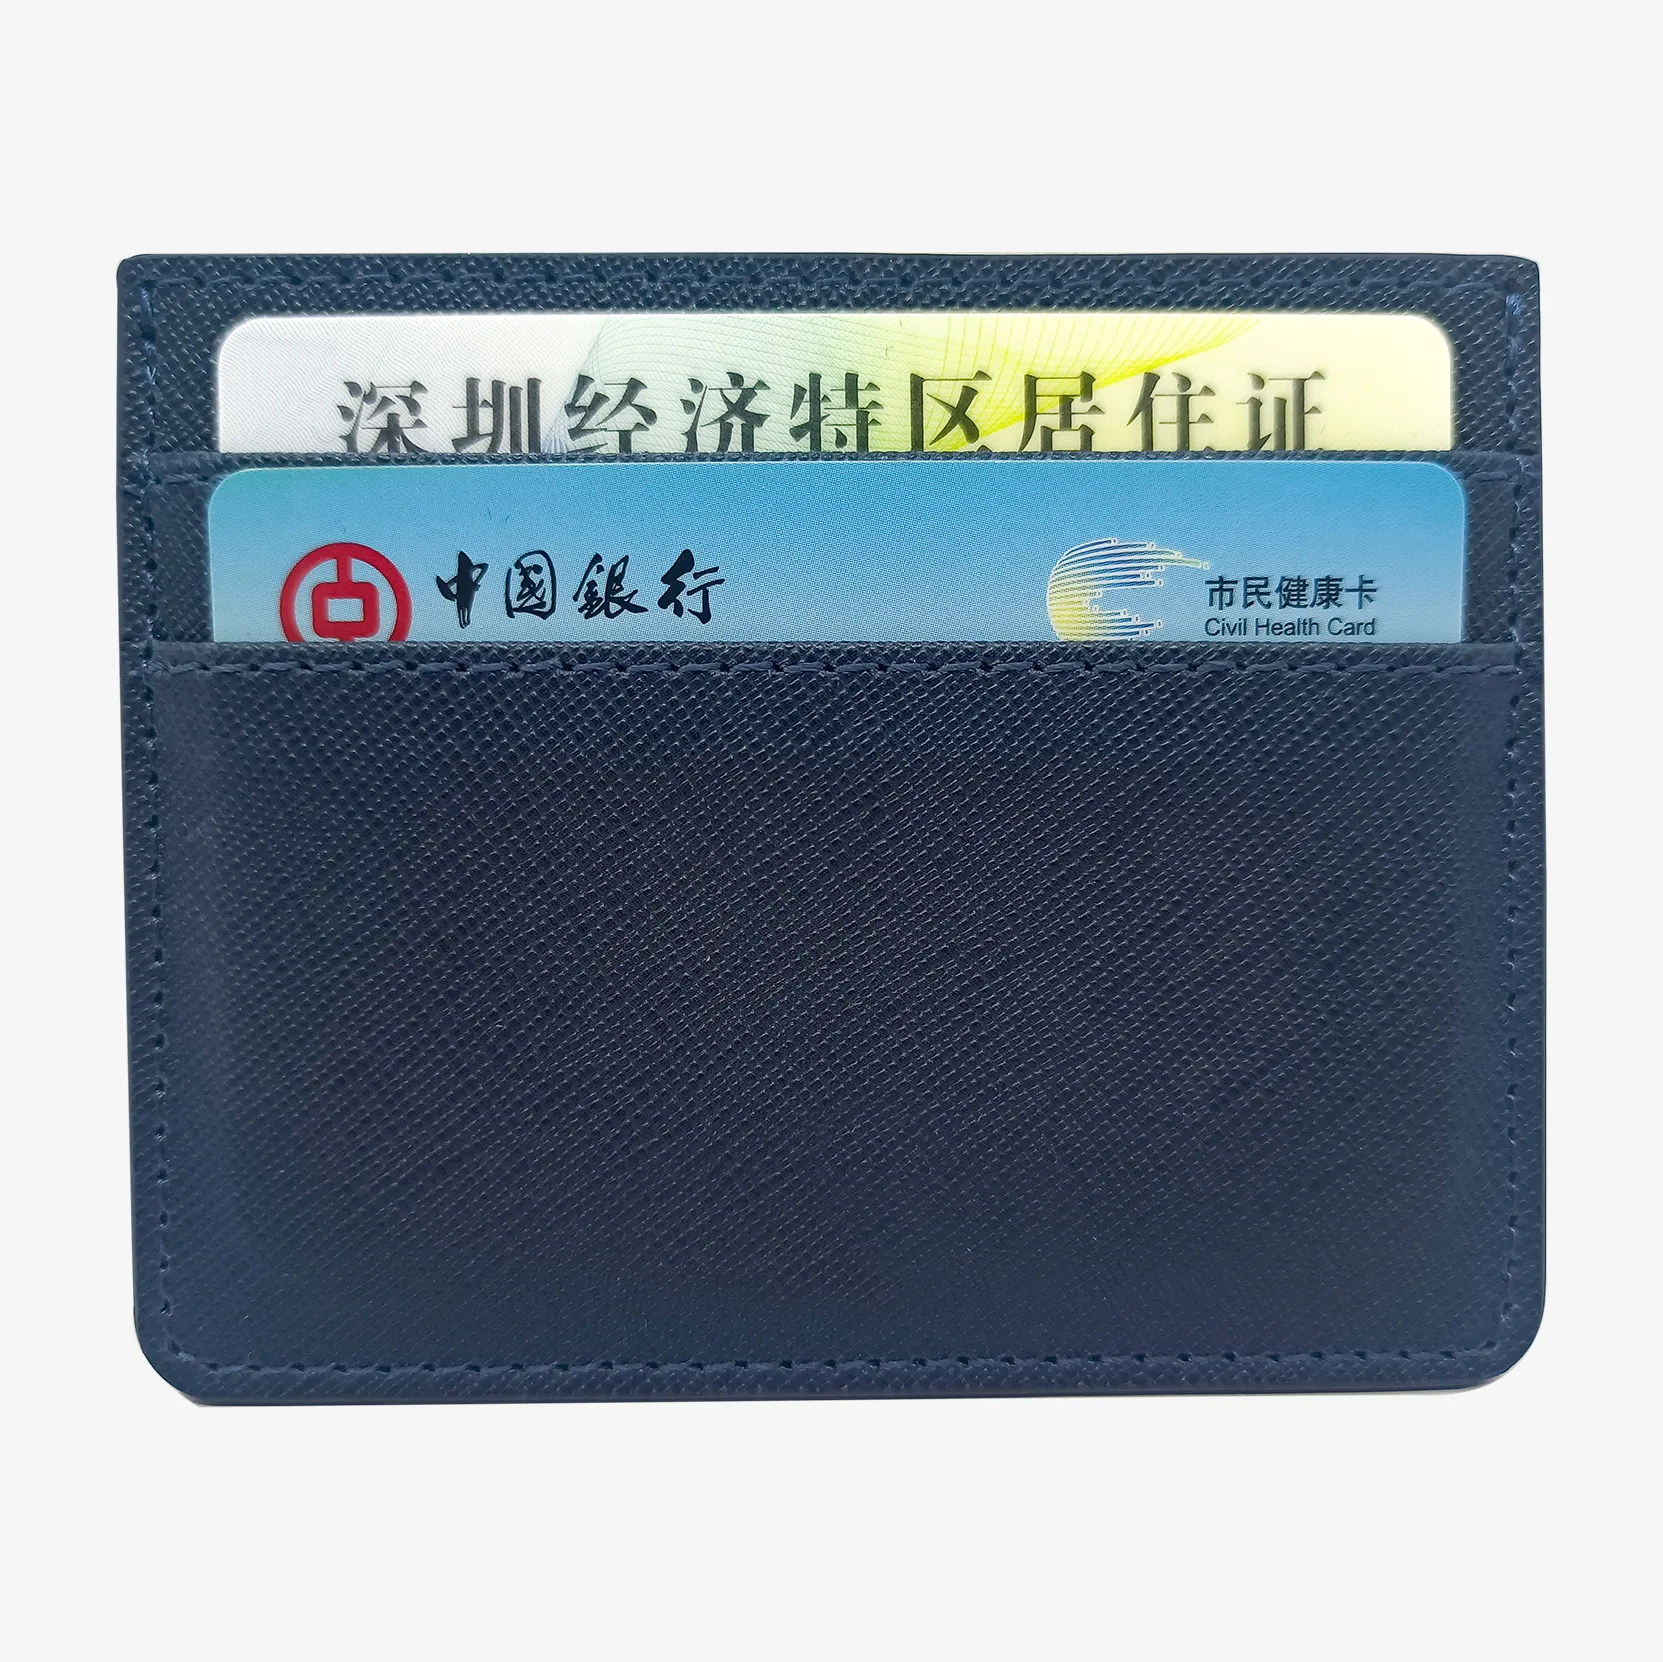 مخصص رخيص سعر المصنع مضاد للسرقة جلد مسطح بطاقة جيب جلد PU ائتمان